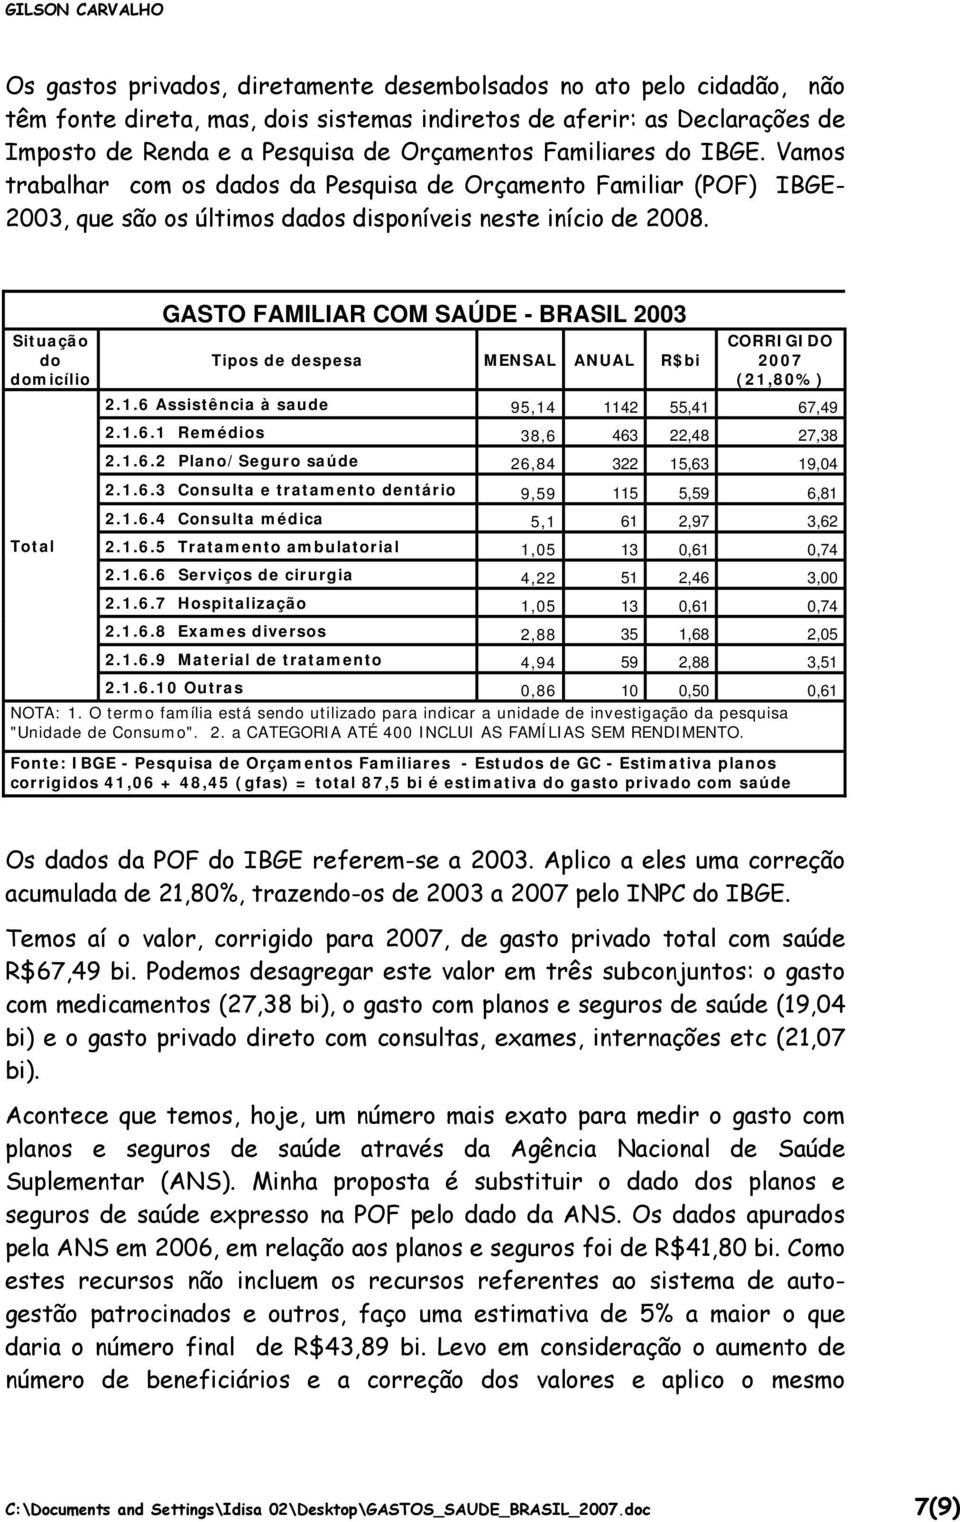 Situação do domicílio GASTO FAMILIAR COM SAÚDE - BRASIL 2003 Tipos de despesa MENSAL ANUAL R$bi CORRIGIDO 2007 (21,80%) 2.1.6 Assistência à saude 95,14 1142 55,41 67,49 2.1.6.1 Remédios 38,6 463 22,48 27,38 2.